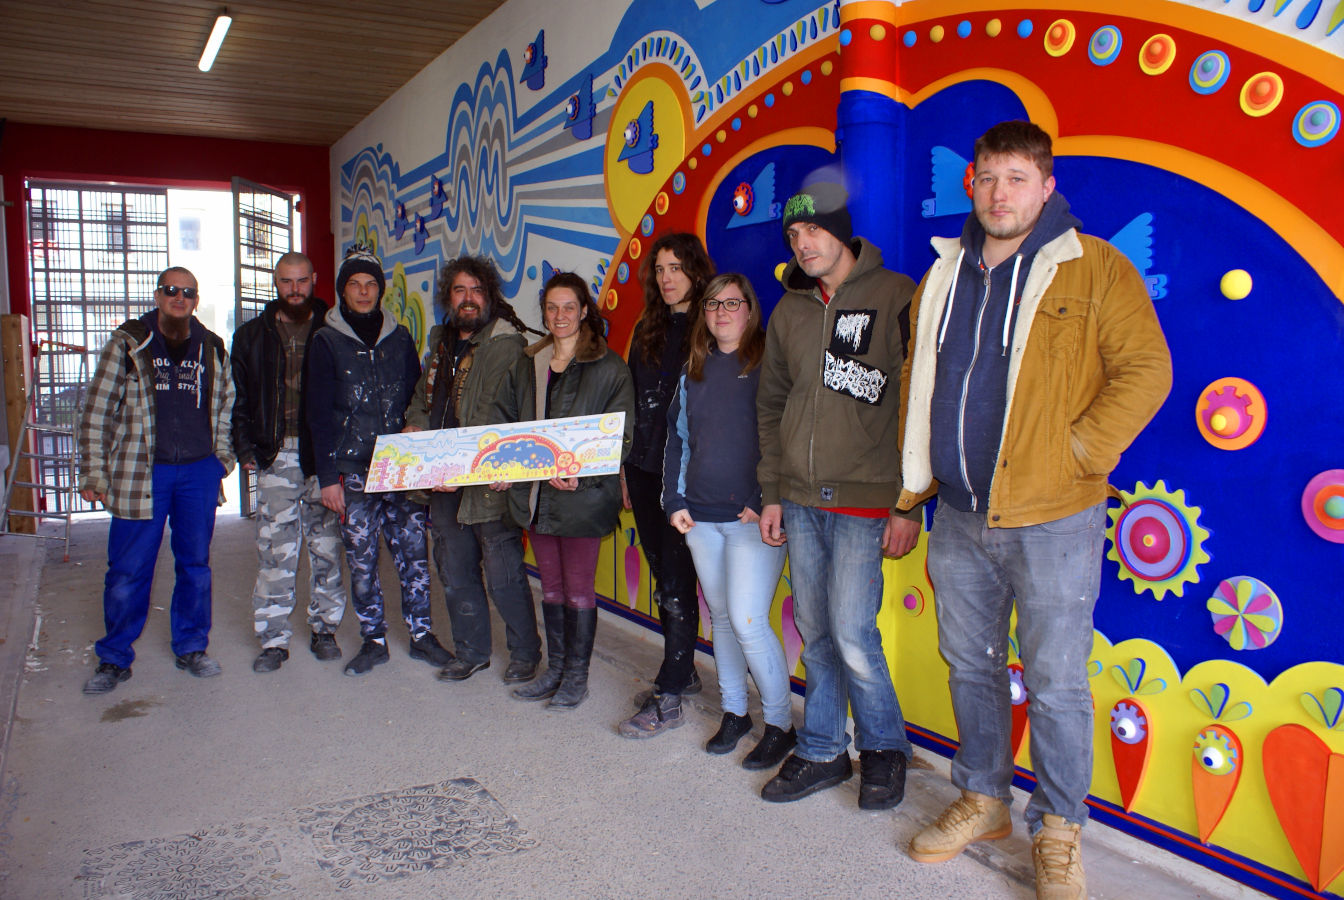 La fresque de la ferme urbaine de Calais, achevée après trois ans de préparation - Karine Bracq pose devant la fresque avec les salariés de l'atelier déco de Calais